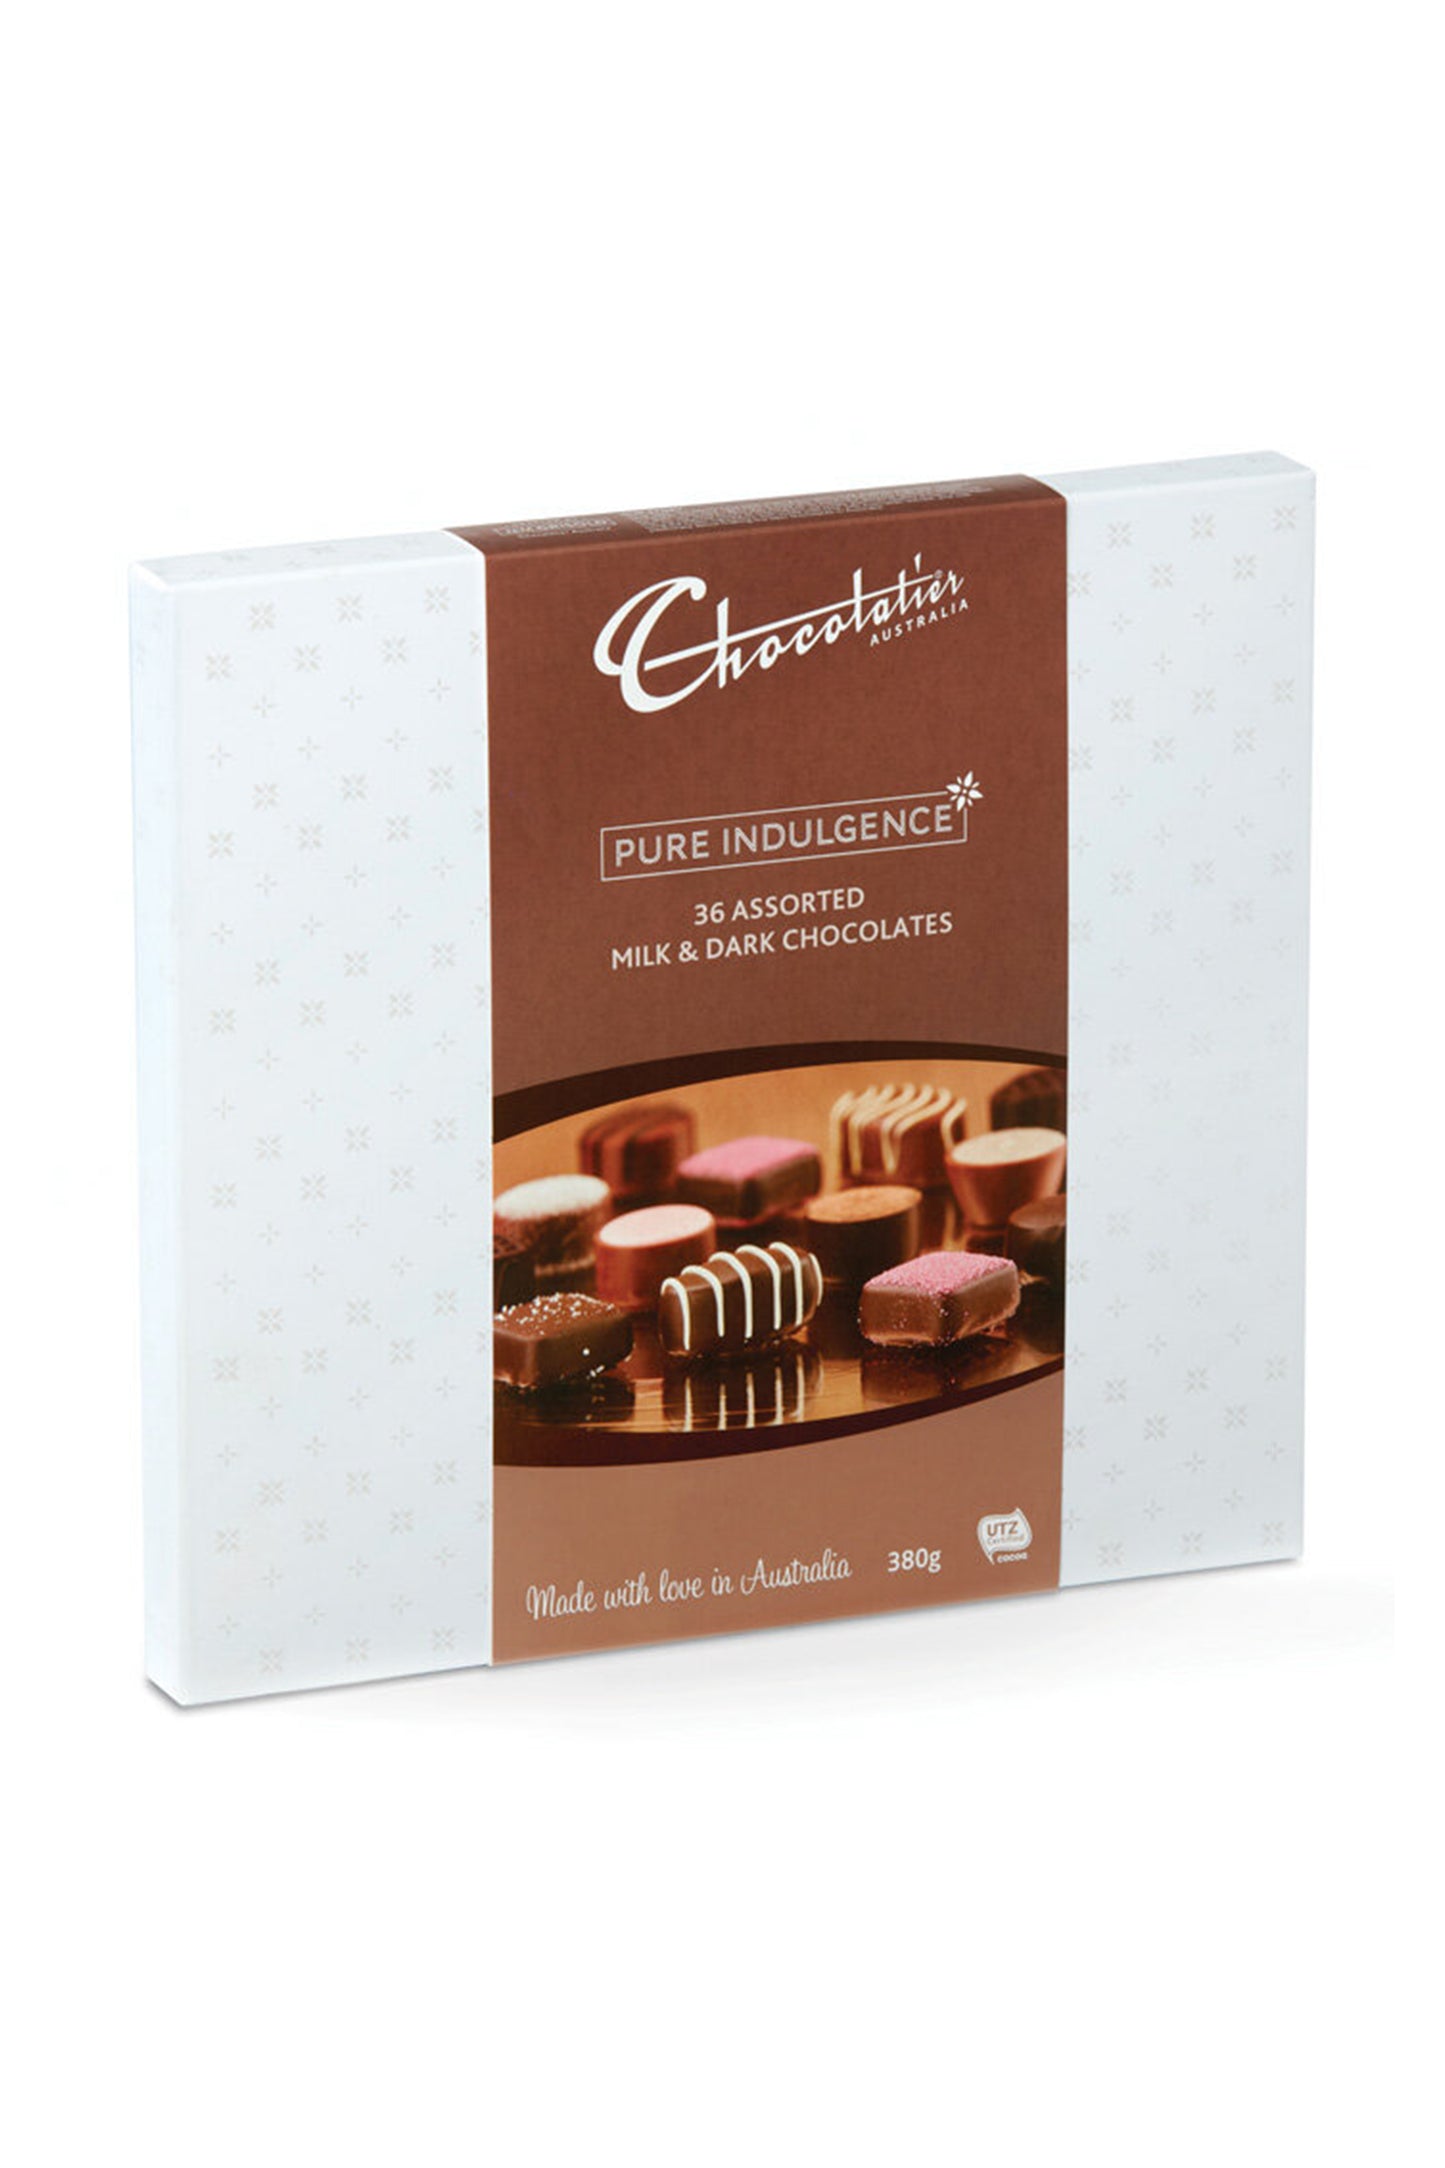 Chocolatier Premium Boxed Chocolates